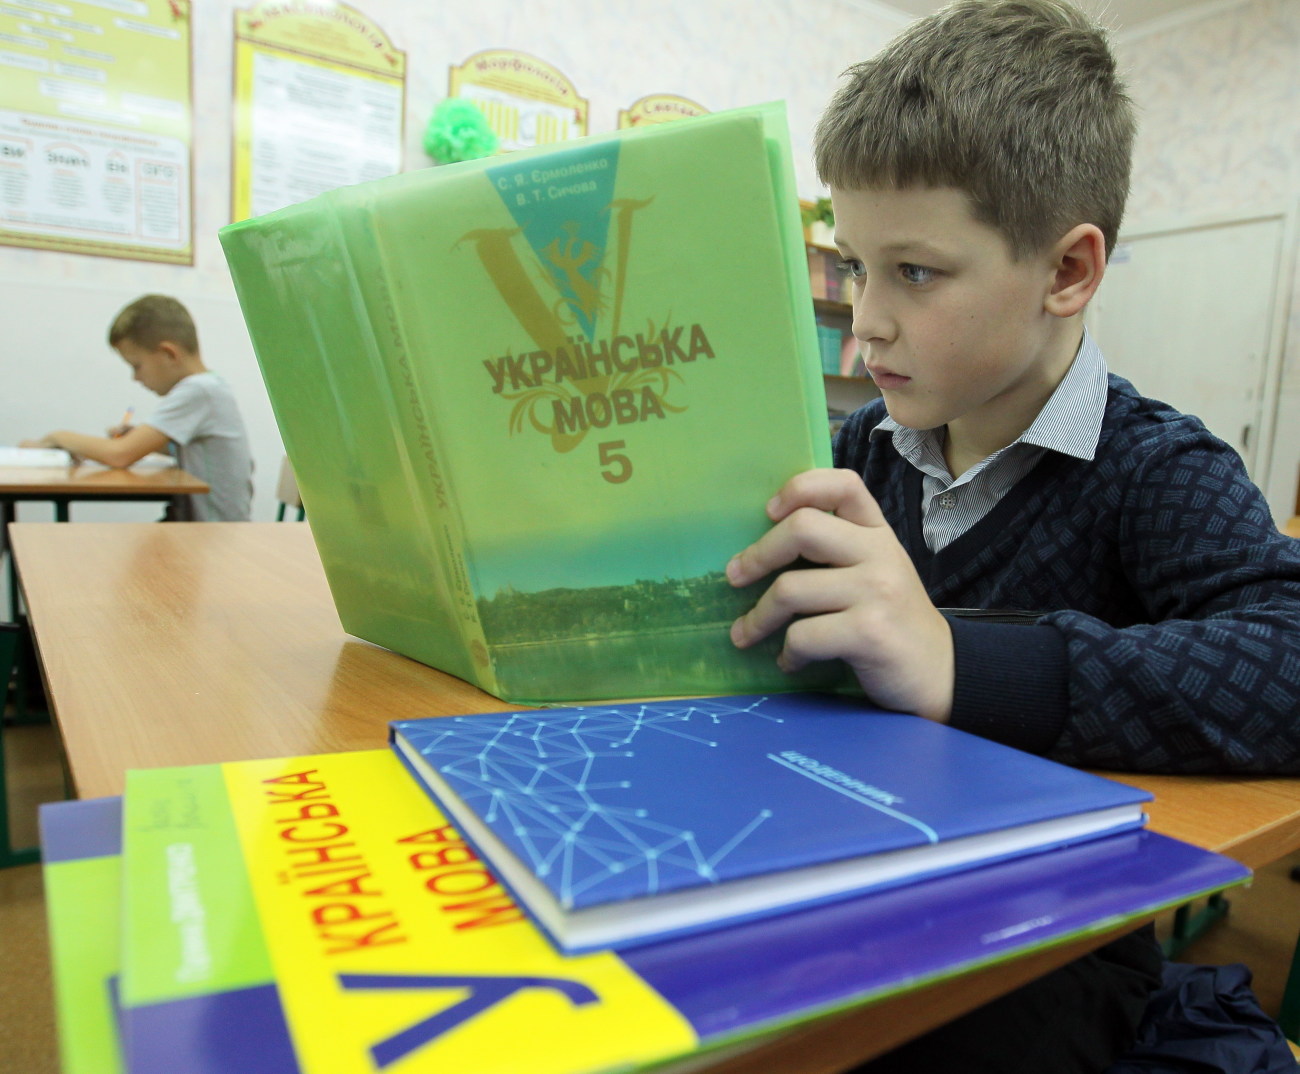 Скандал с украинским законом об образовании затмил каталонский референдум в Европе